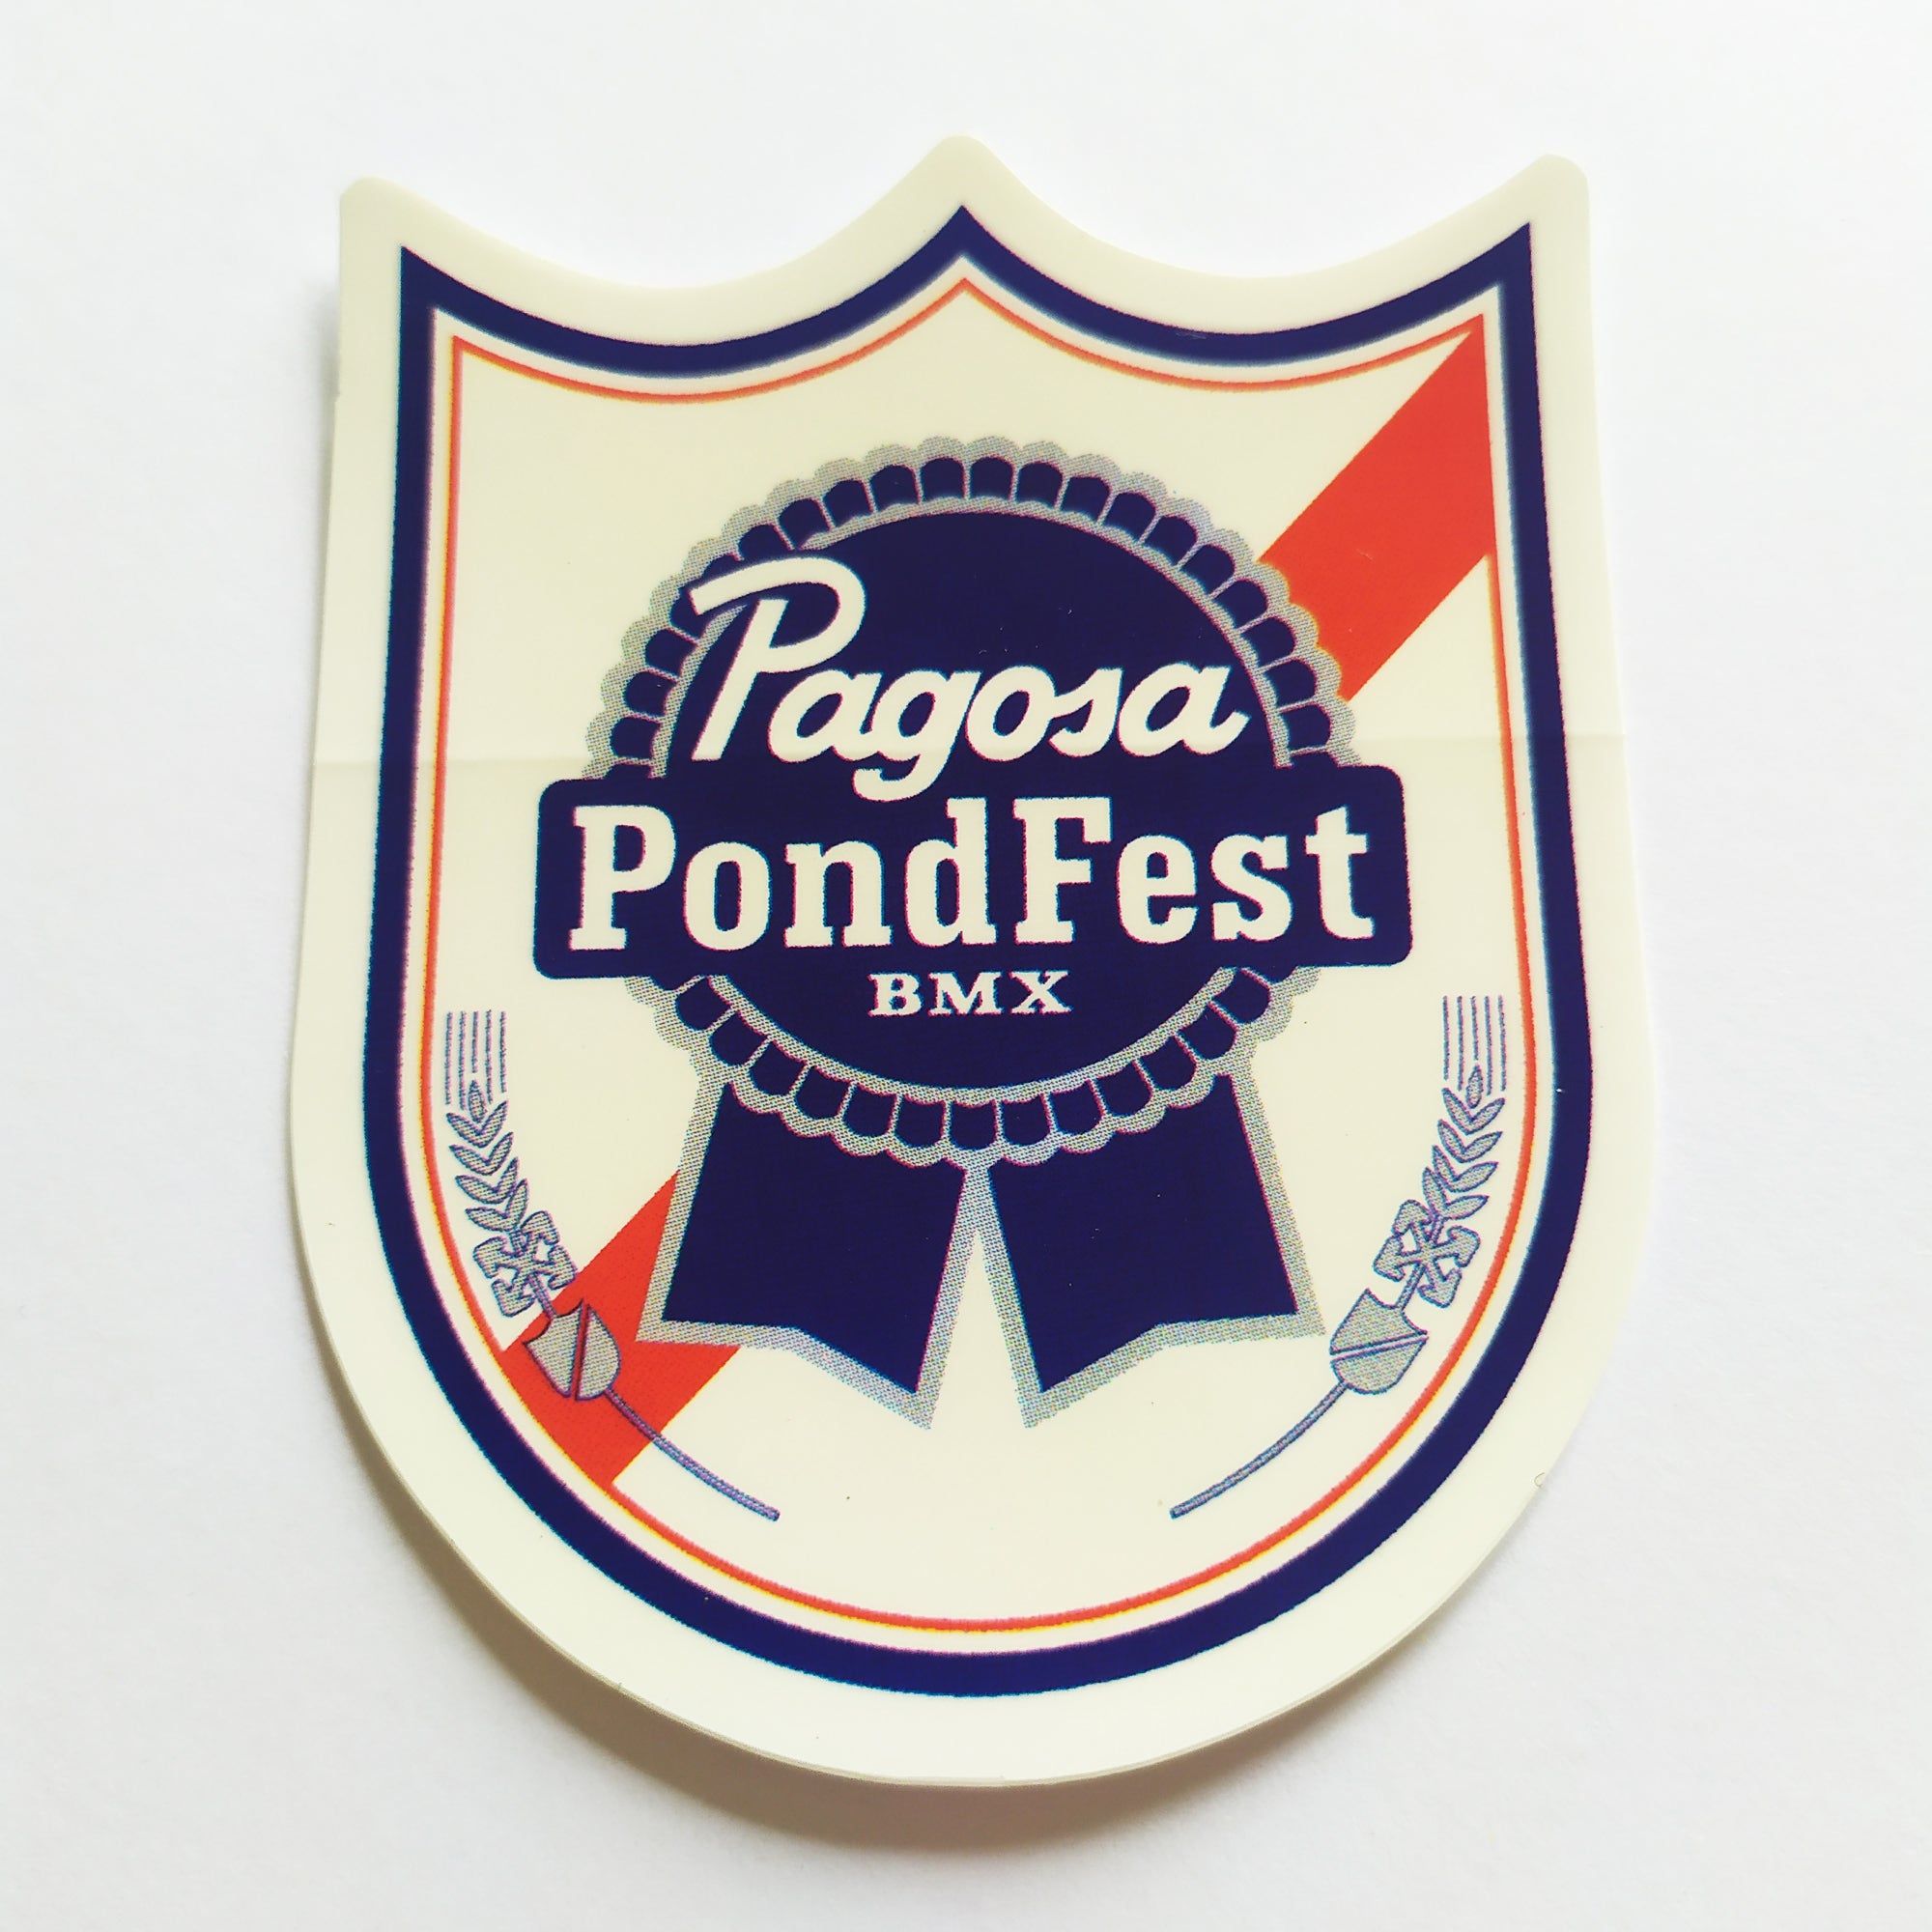 S&M - "Pagosa Pond Fest" BMX Sticker - SkateboardStickers.com